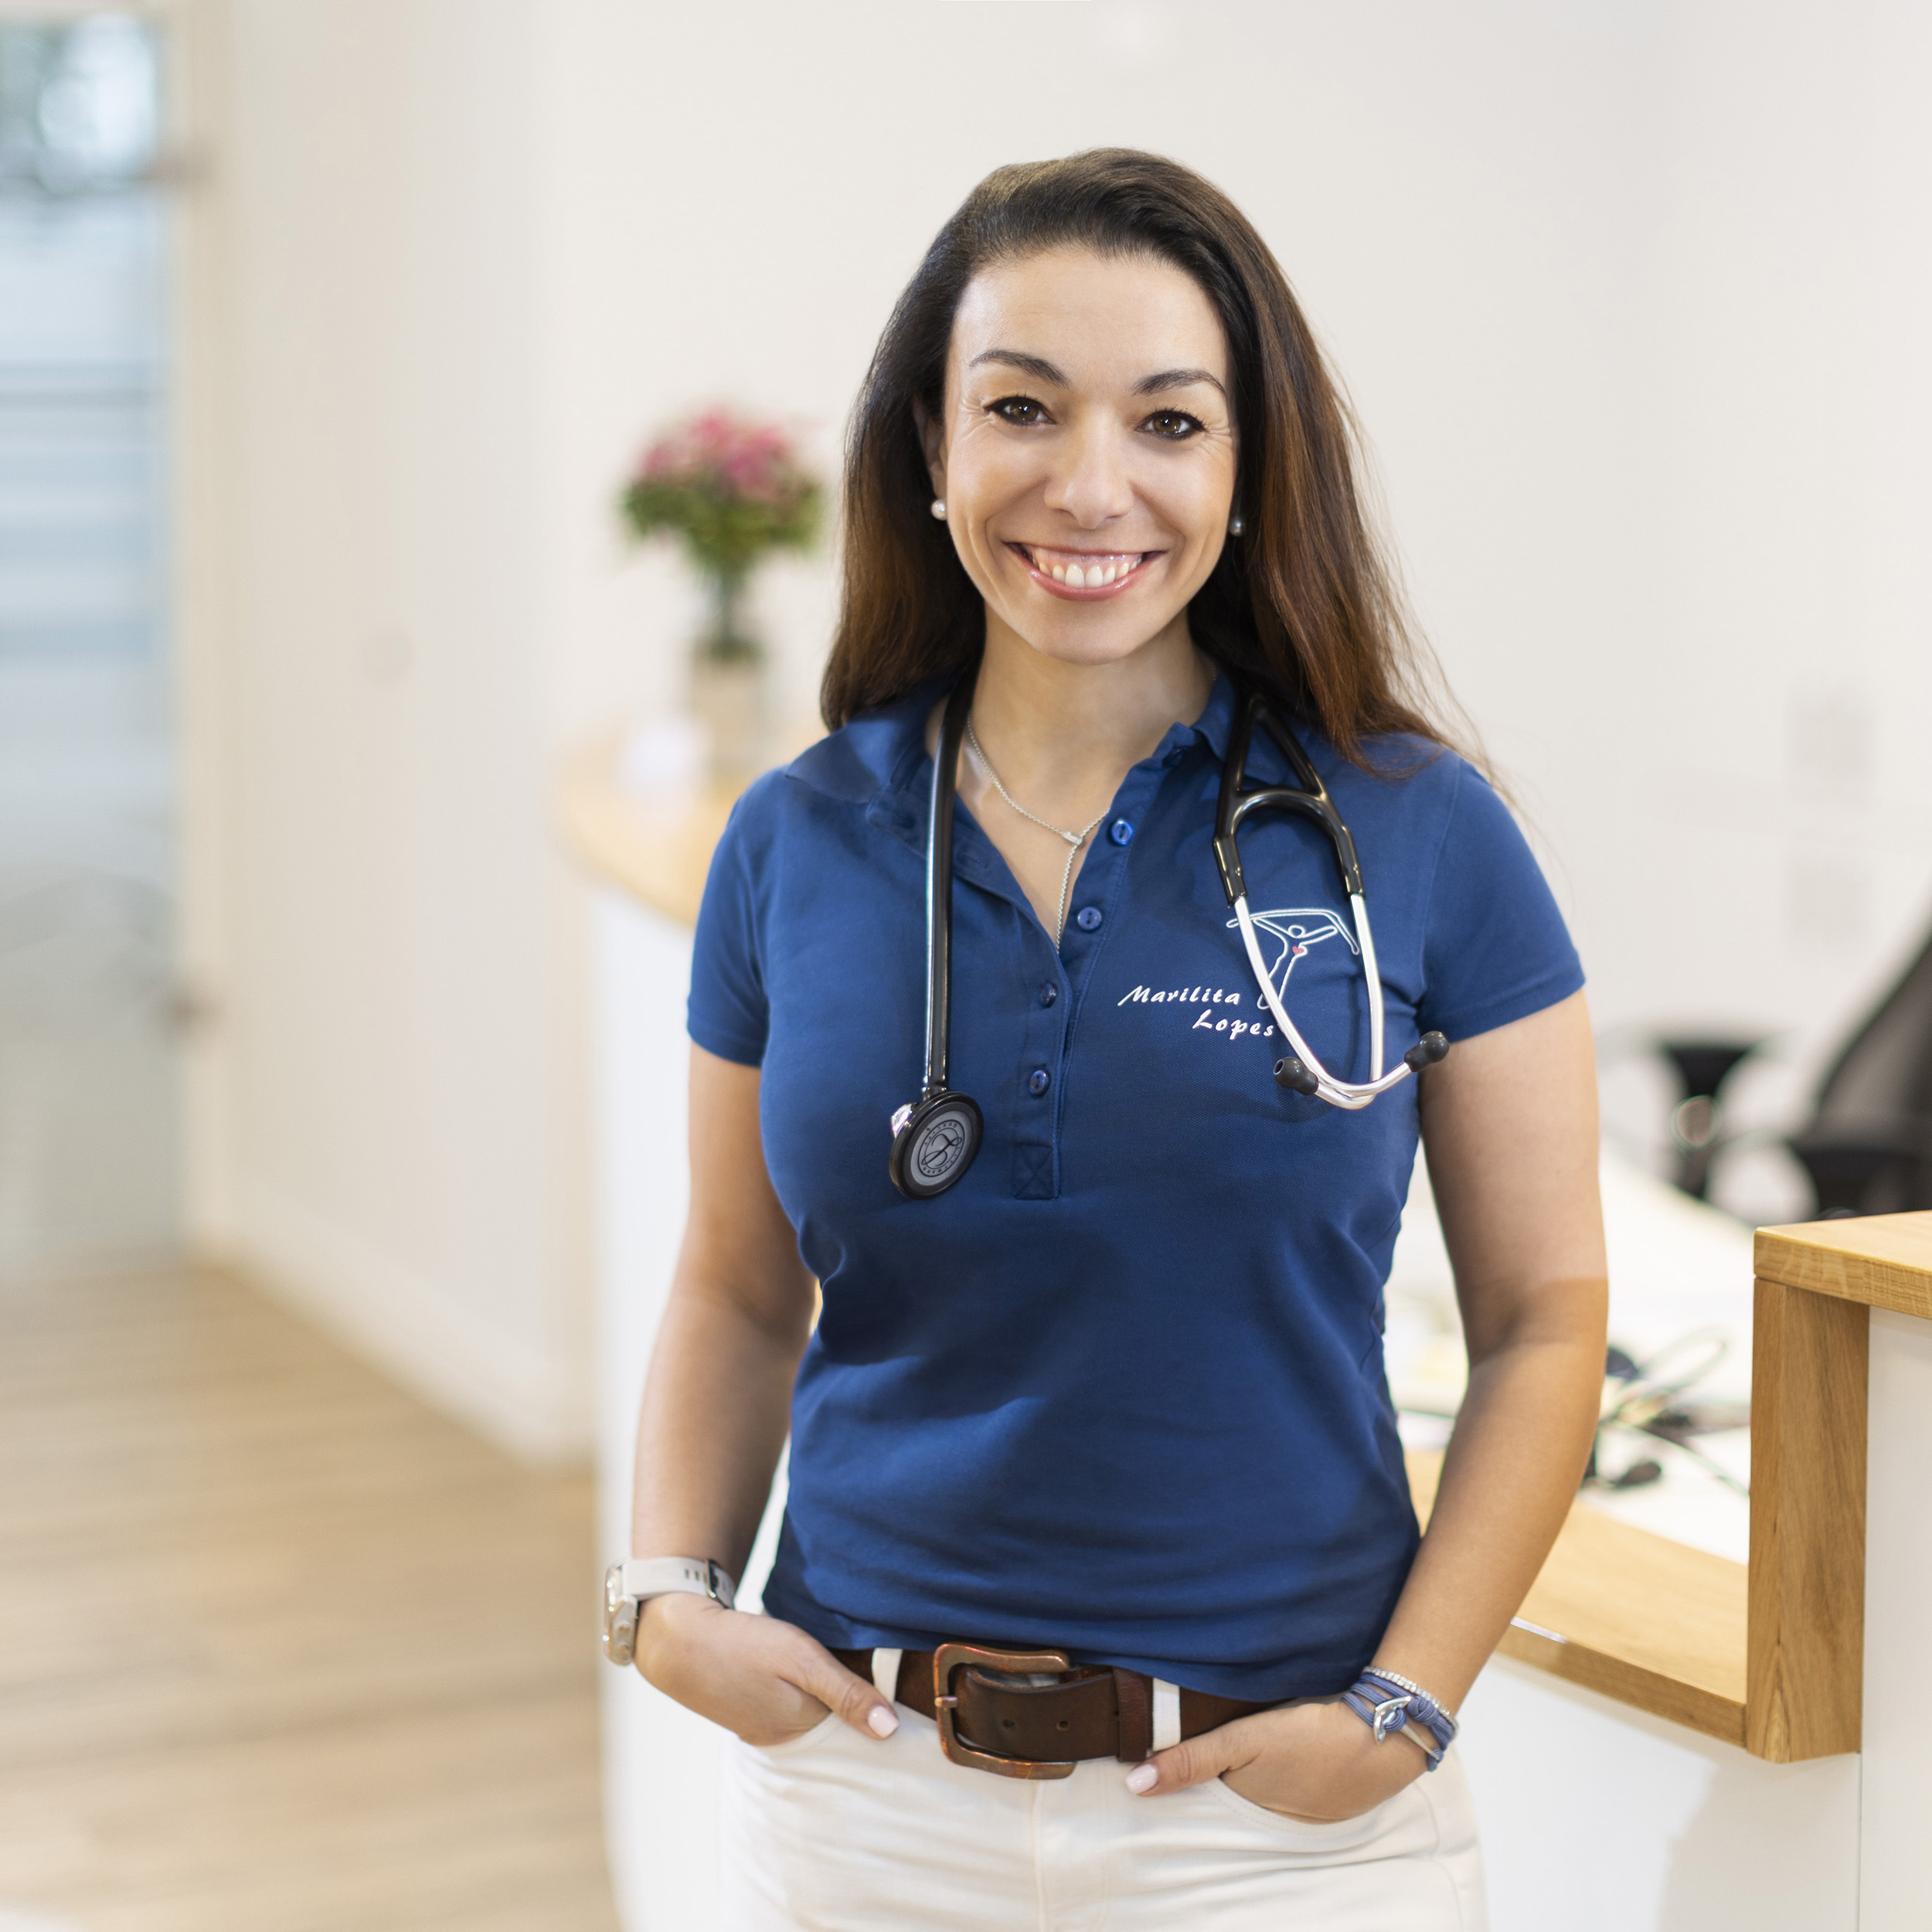 Ärztin in ihrer Praxis, trägt weiße Hose und blaues Shirt mit Stethoskop, lächelnd mit Händen in den Taschen